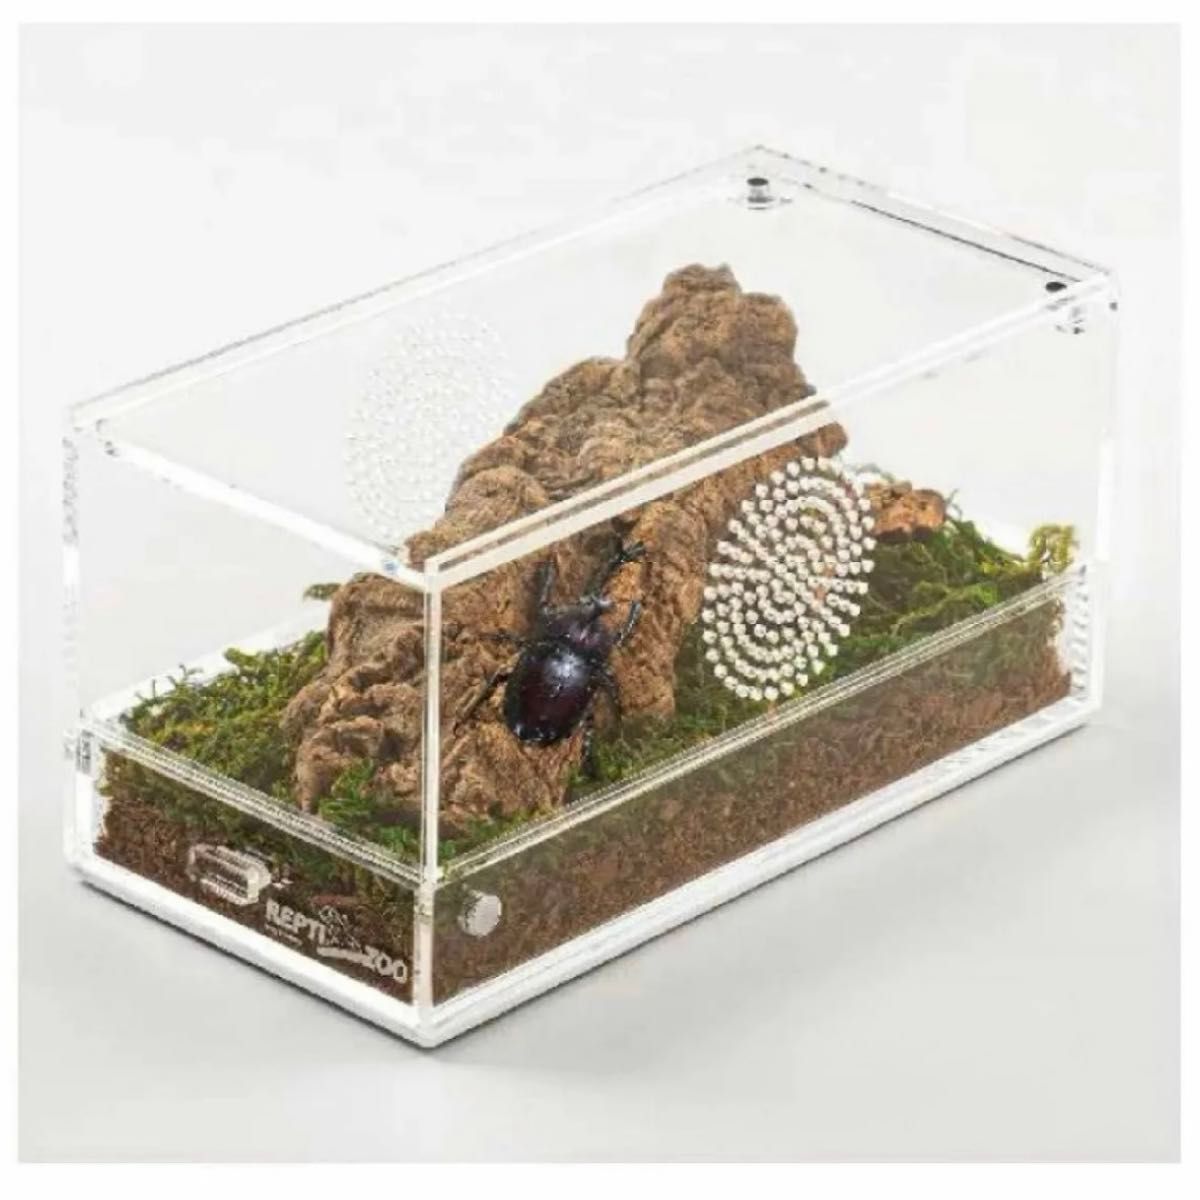 REPTI ZOO 爬虫類ケージ アクリル製 レプタイルボックス 透明 スライドカバー 通気性 爬虫類両生類用飼育